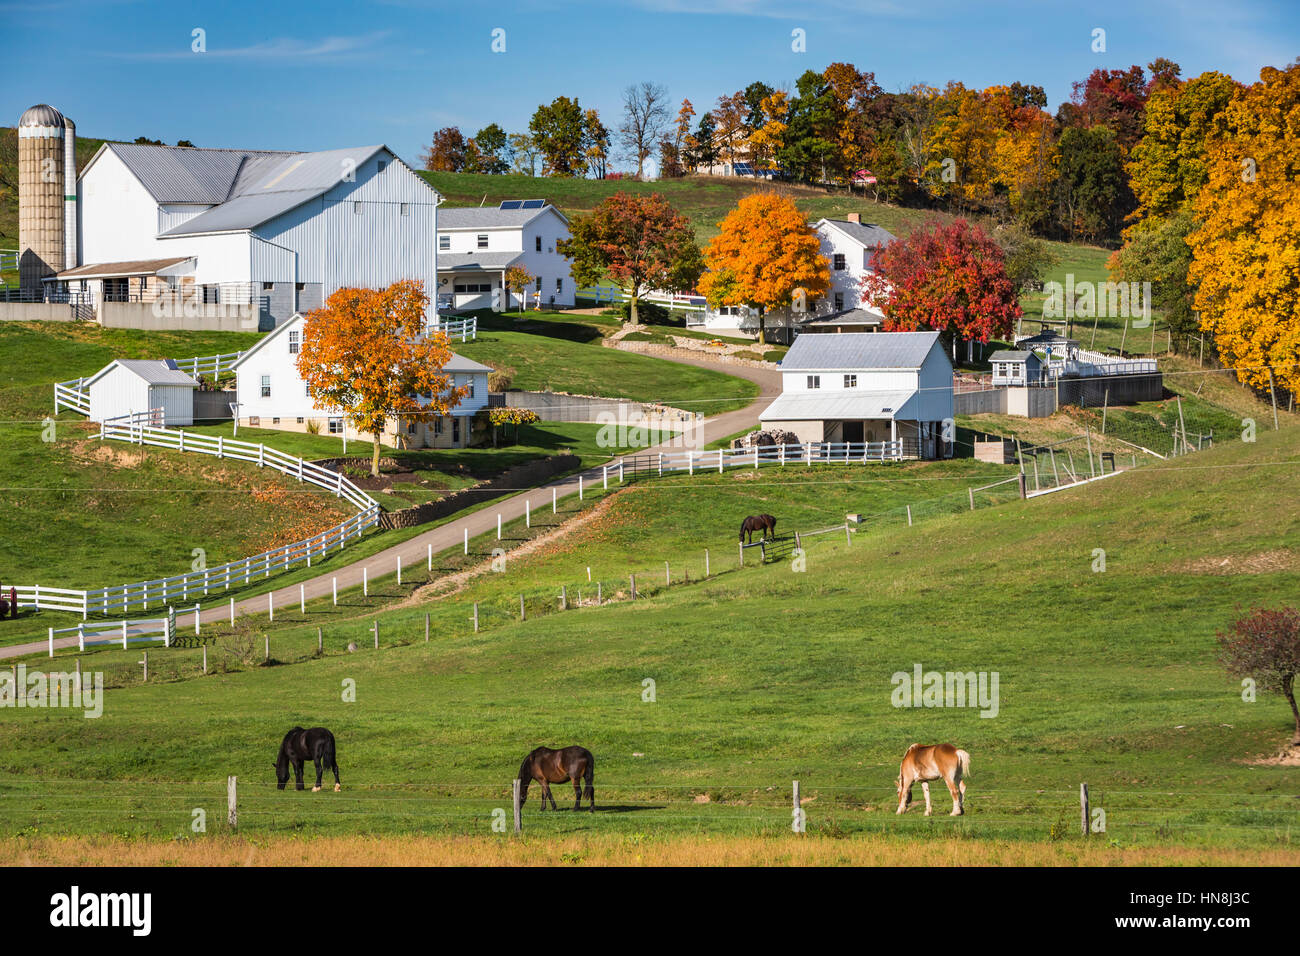 Un Amish farm avec maison, grange et des chevaux près de charme, Ohio, USA. Banque D'Images